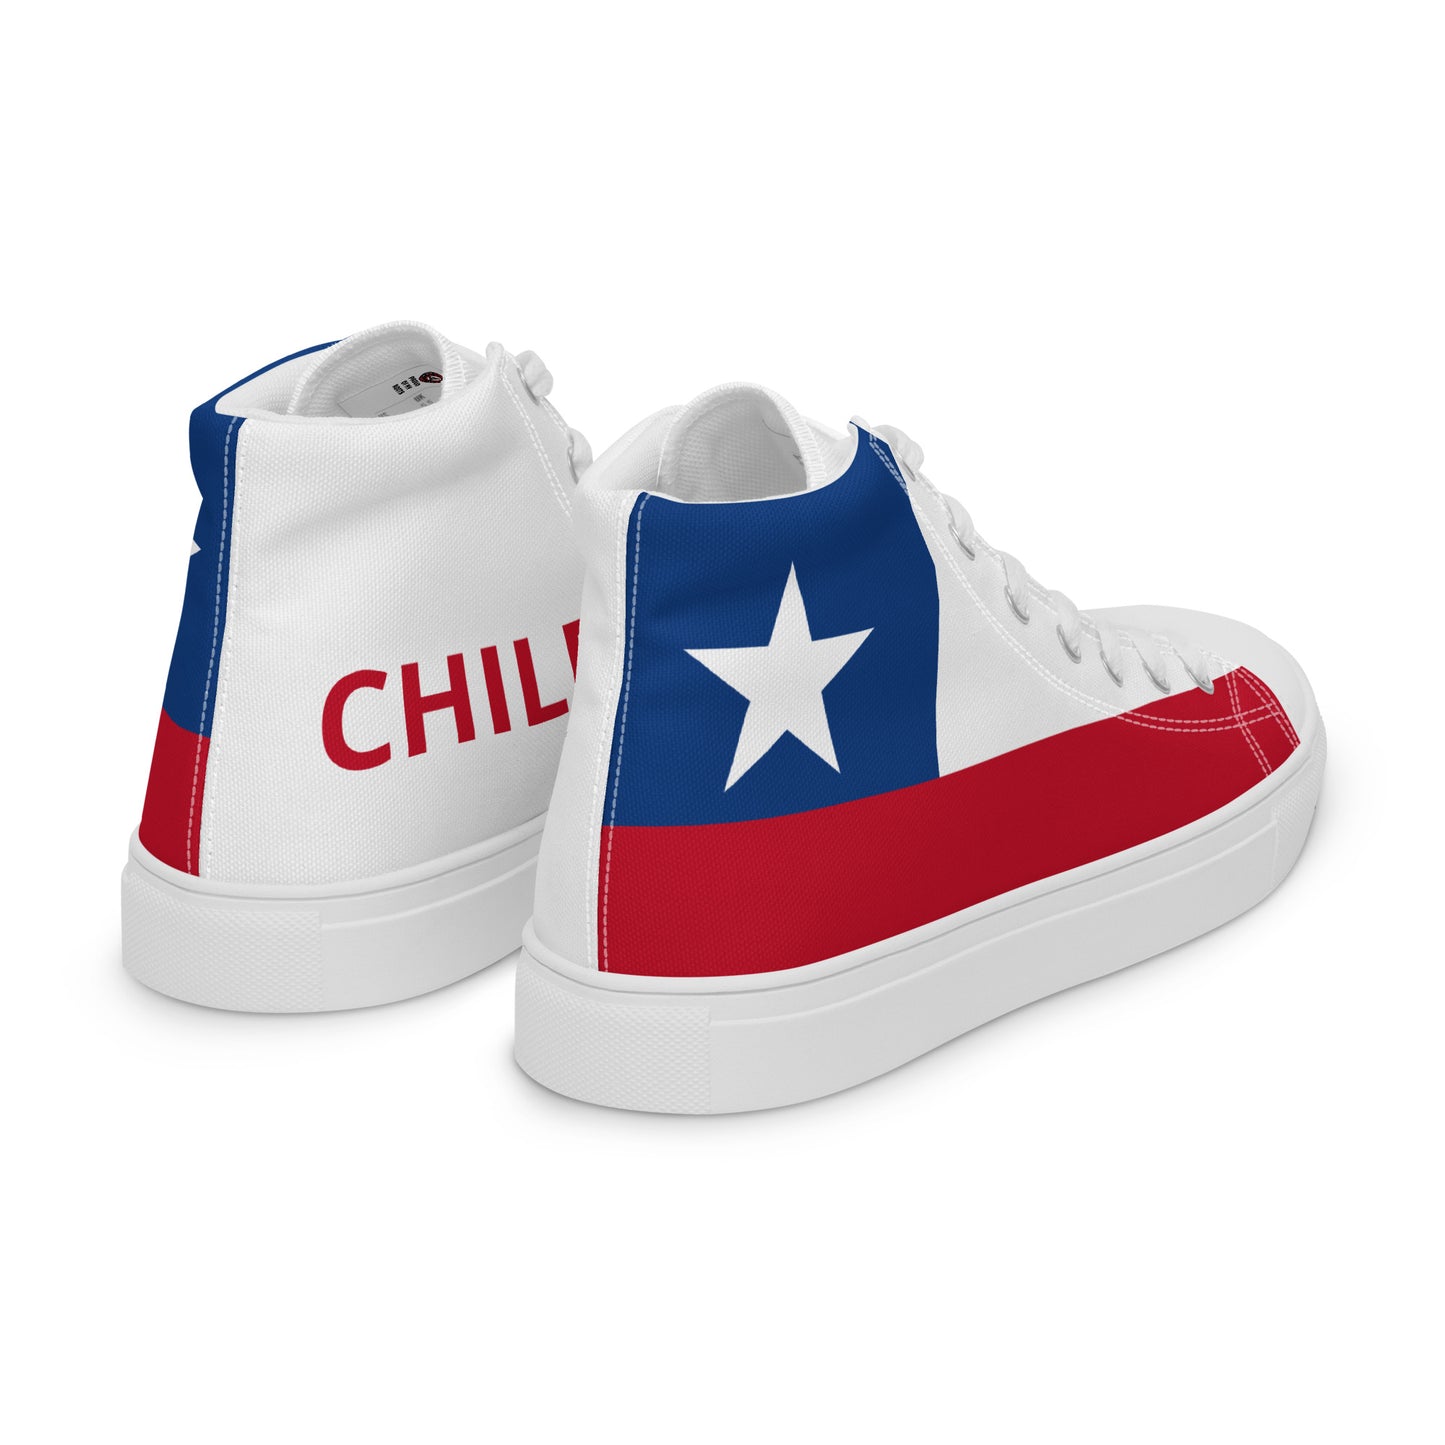 Chile - Women - Bandera - High top shoes